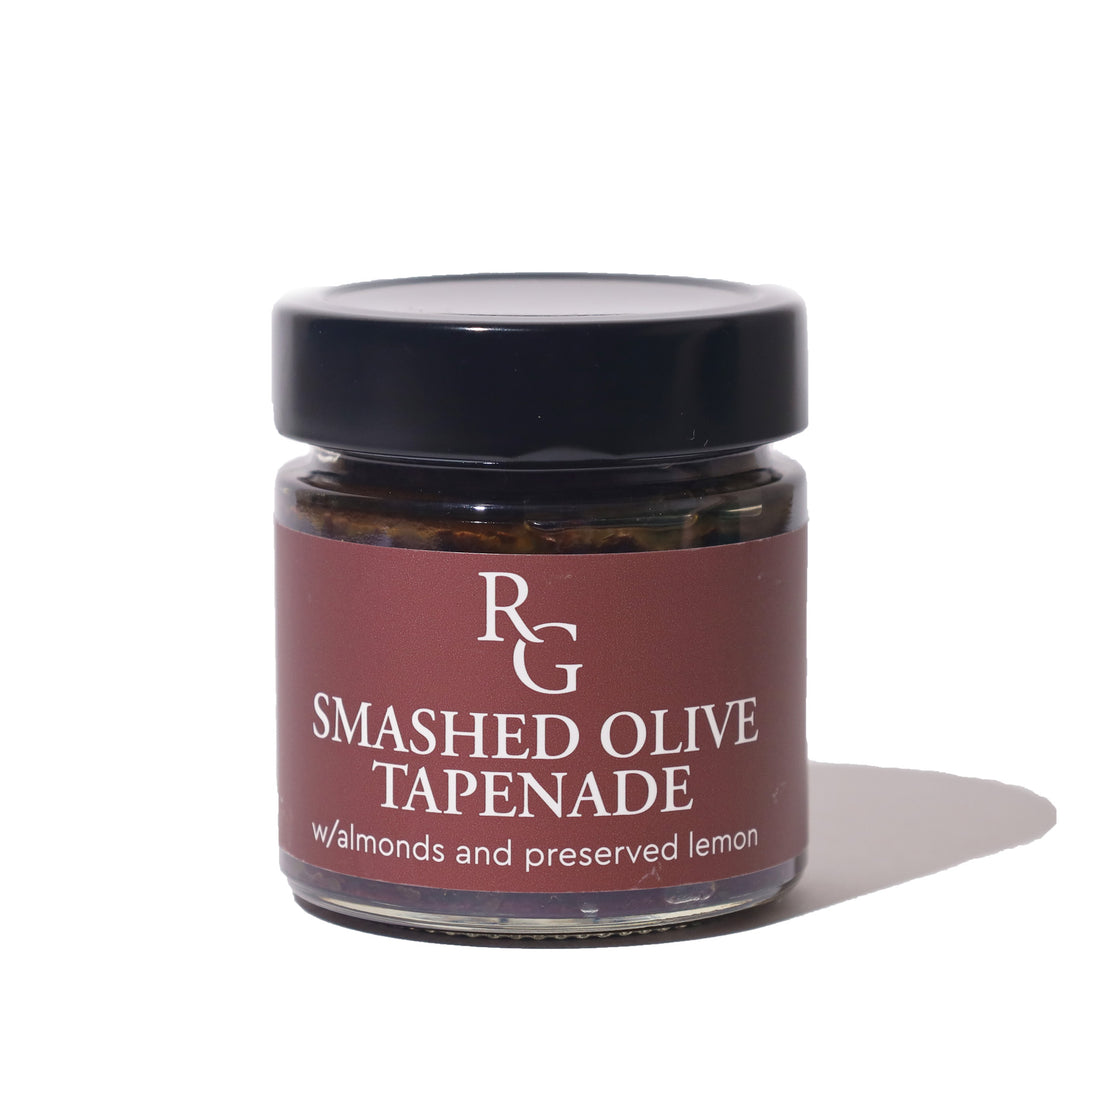 Smashed Olive Tapenade